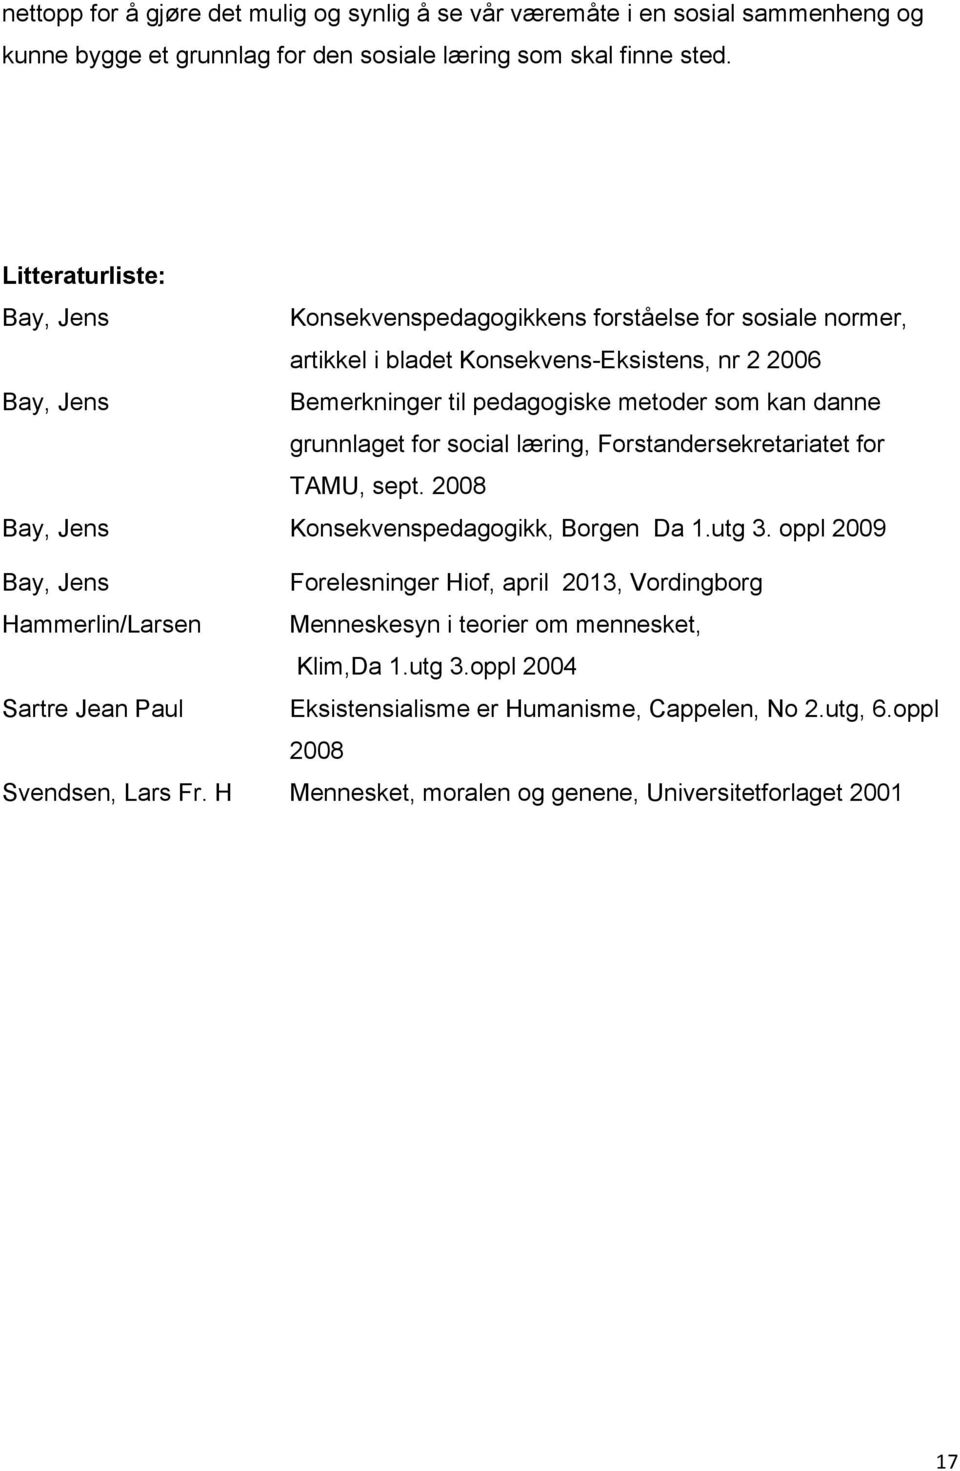 grunnlaget for social læring, Forstandersekretariatet for TAMU, sept. 2008 Bay, Jens Konsekvenspedagogikk, Borgen Da 1.utg 3.